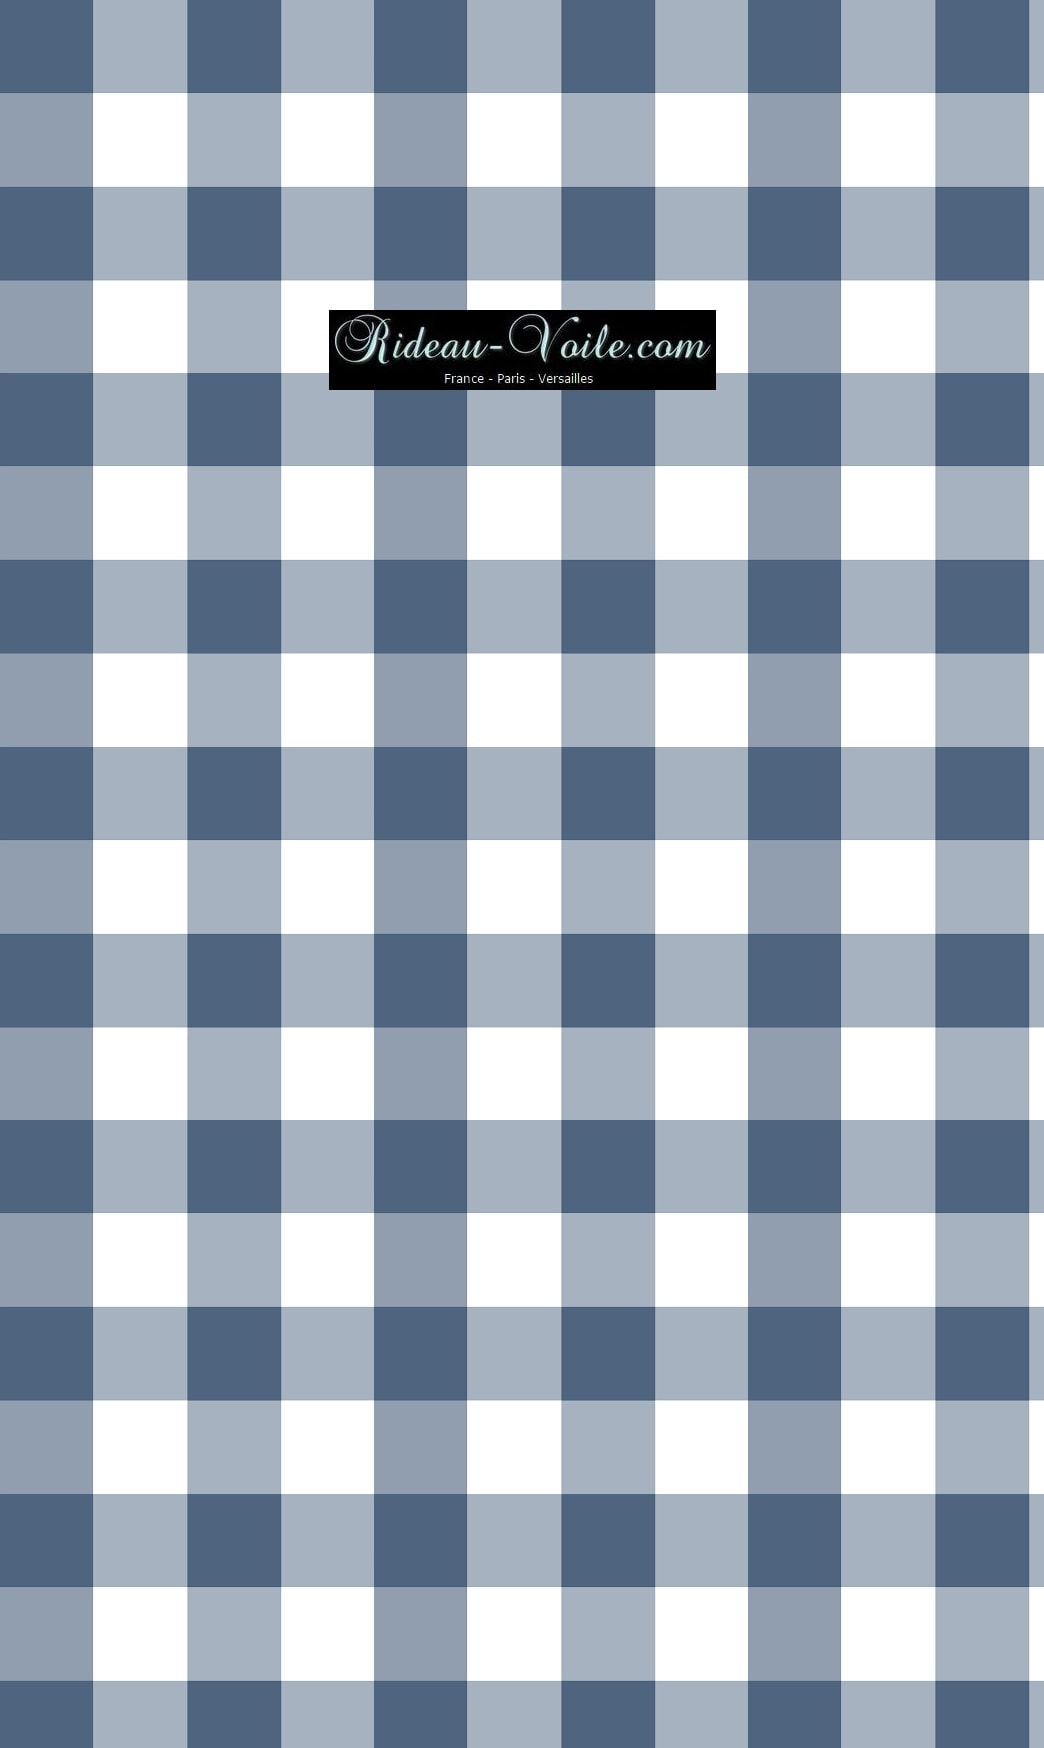 tissu carreaux carré vichy bleu blanc au mètre ameublement textile sur mesure tapisserie luxe haut de gamme Paris France Versailles Monaco